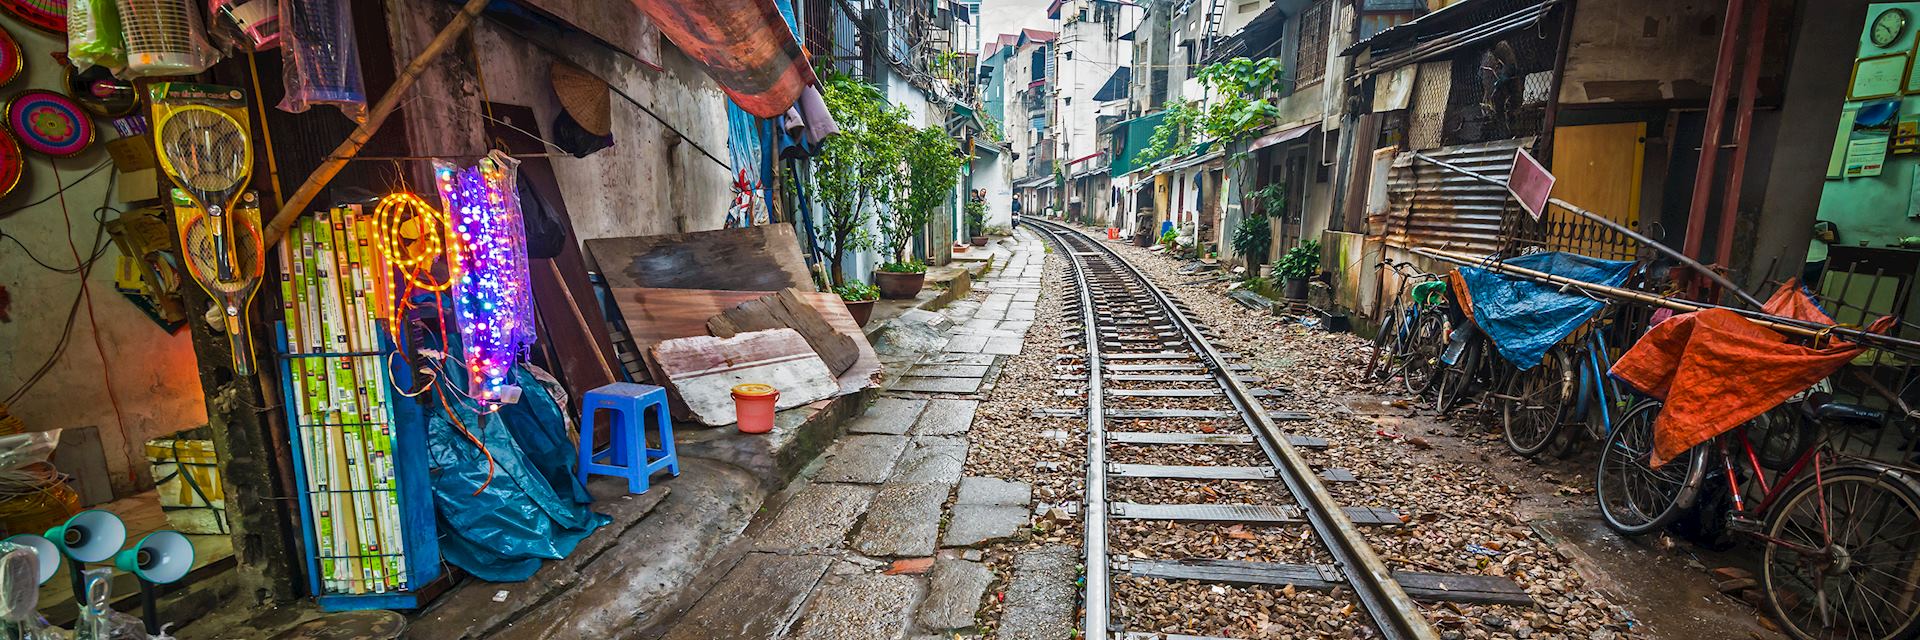 Rail line running through part of Hanoi